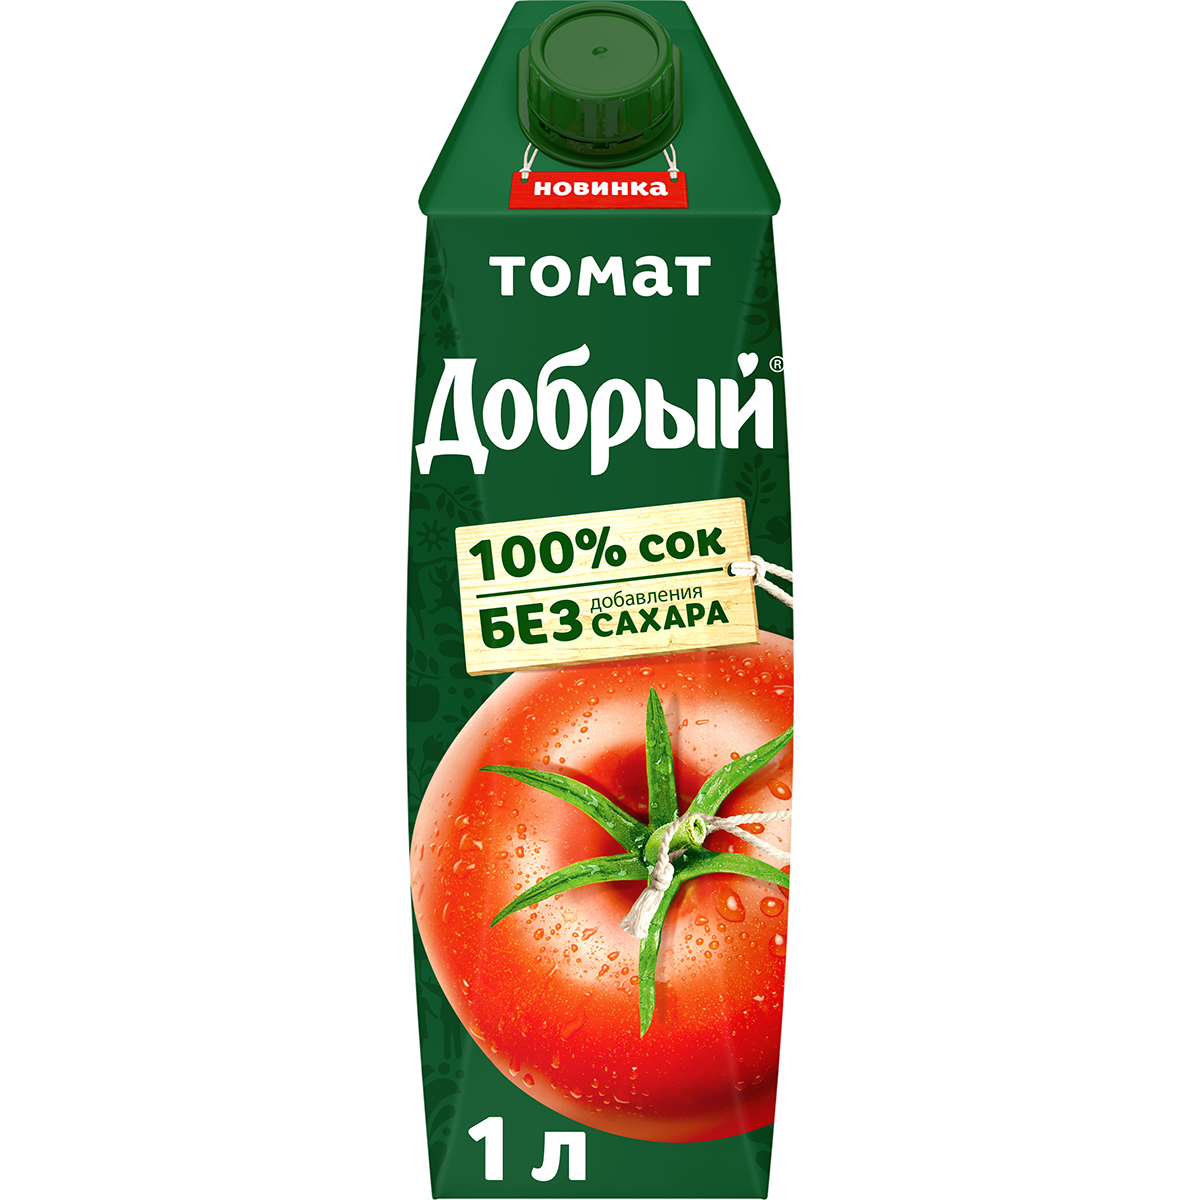 Сок Добрый томатный с солью и с мякотью 1 л